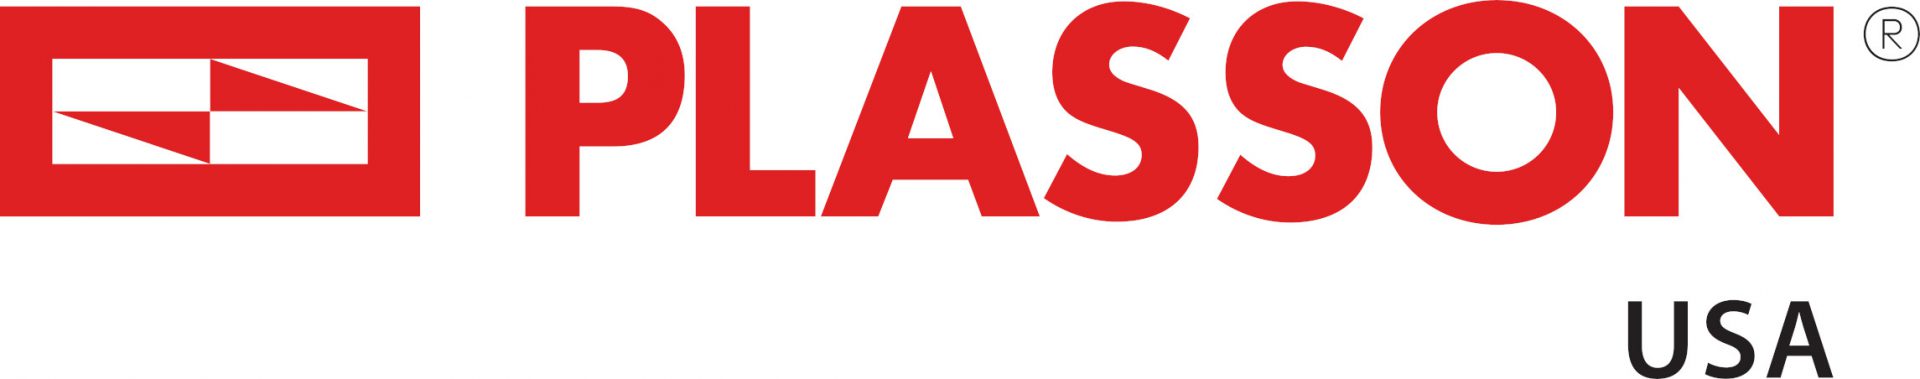 Plasson USA logo